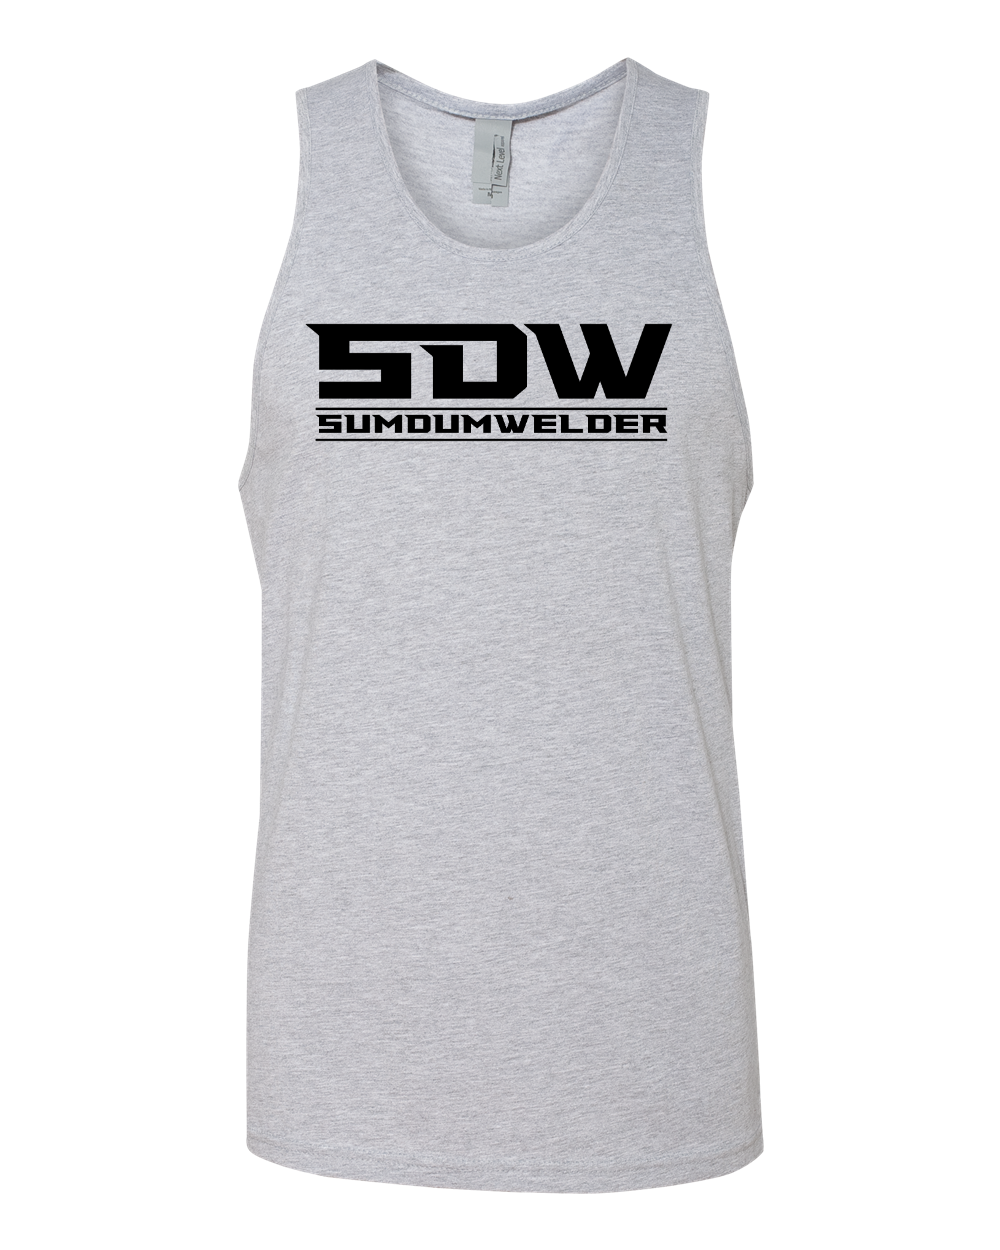 SDW Full Front - Black logo